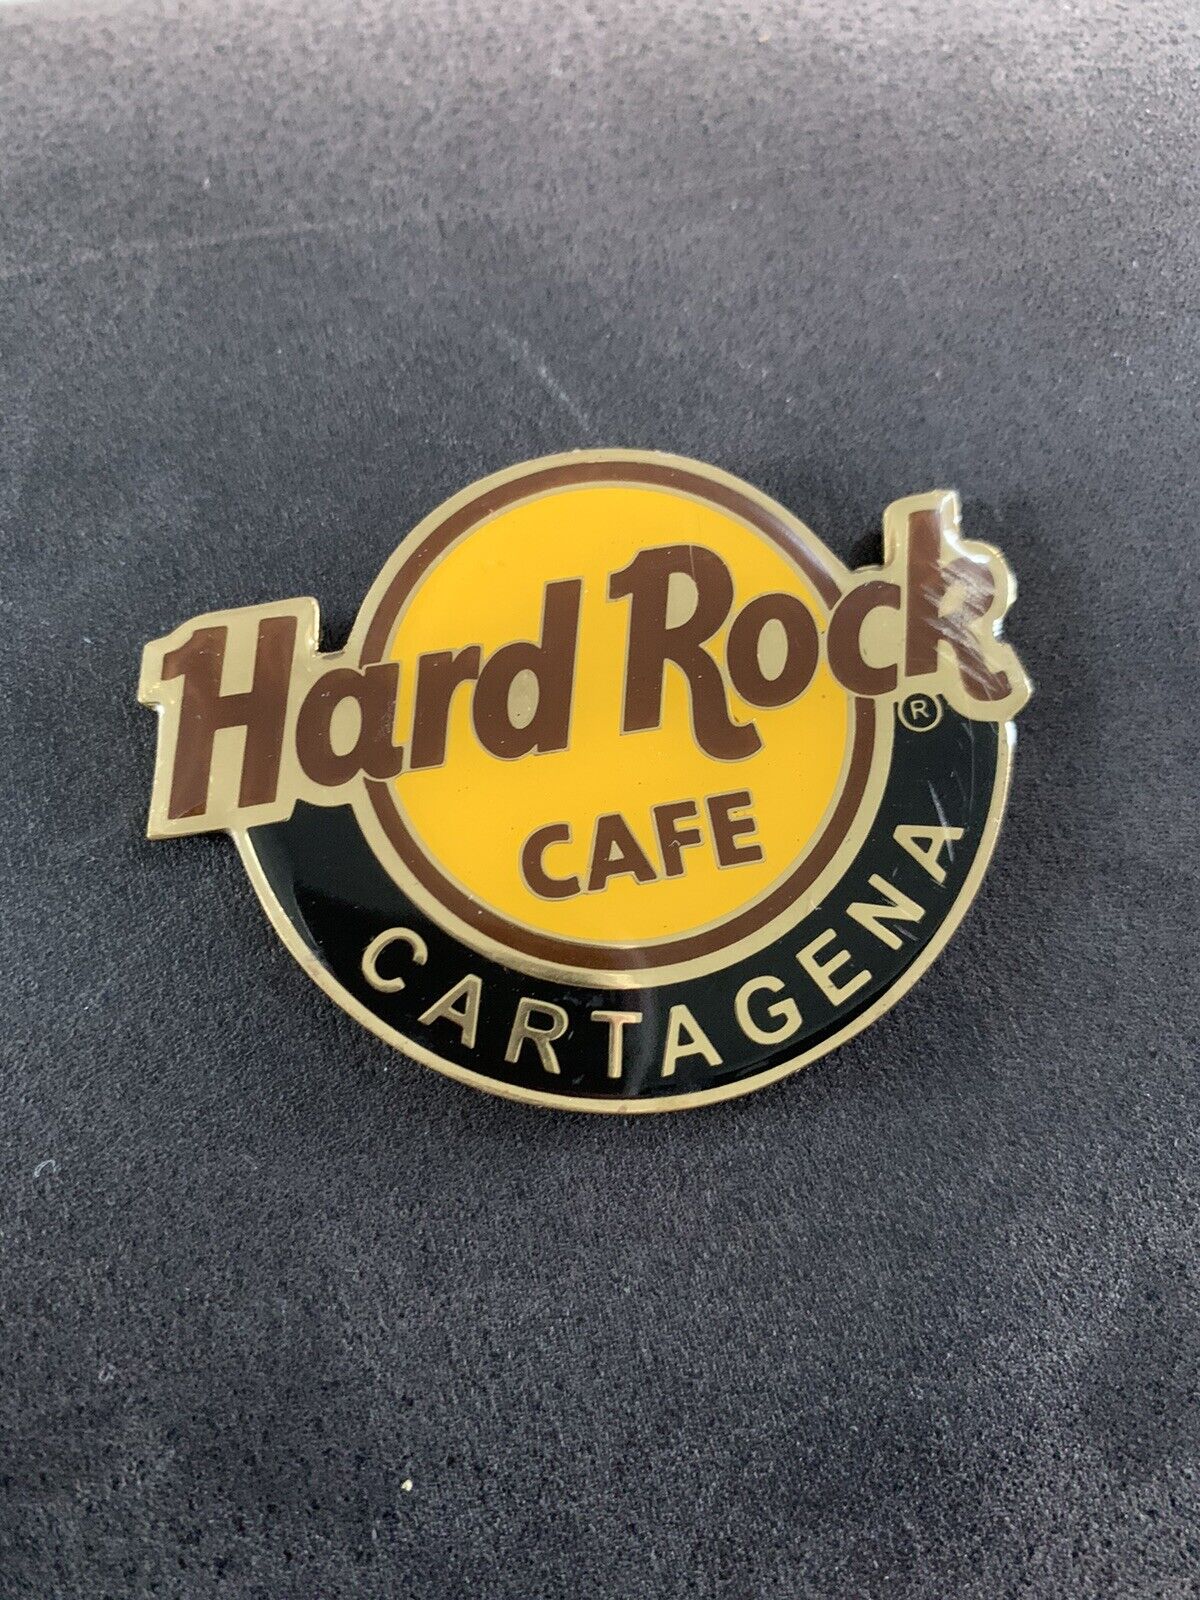 Hard Rock Cafe Magnet Cartagena 